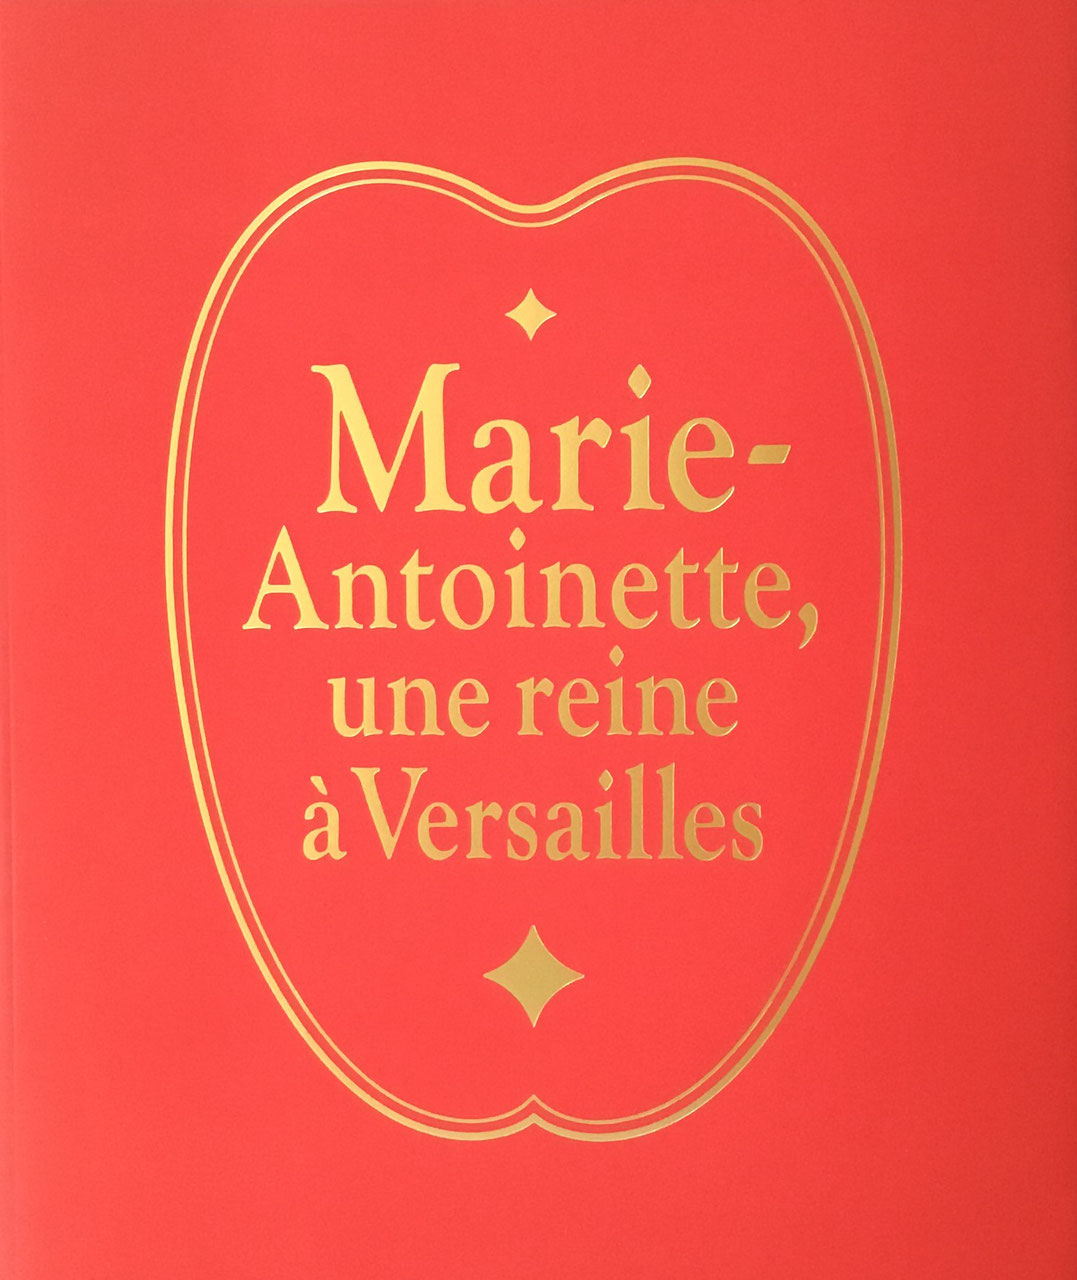 マリー・アントワネット展 美術品が語るフランス王妃の真実 – smokebooks shop